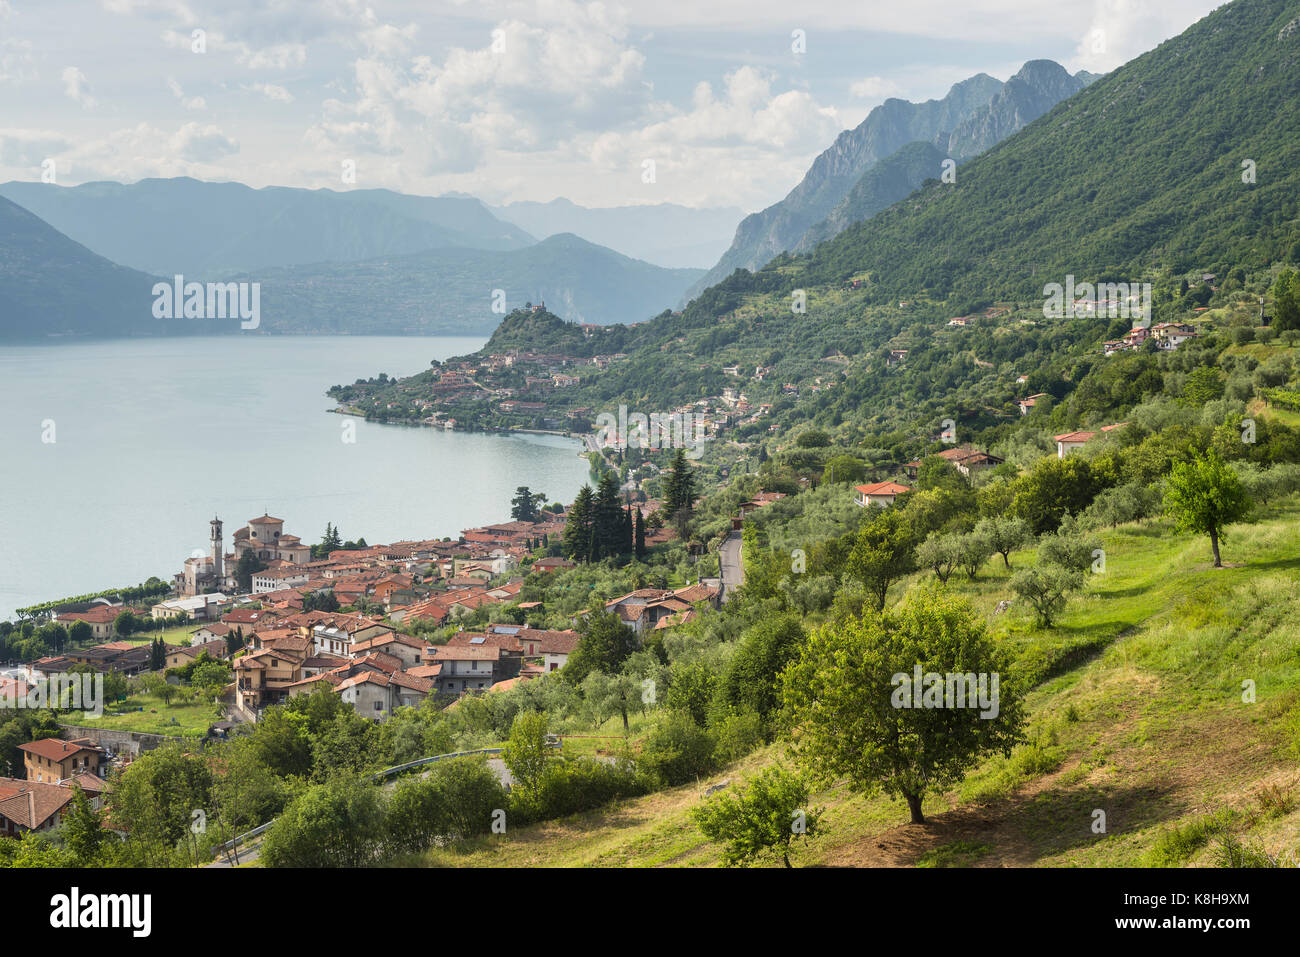 Les villages de style méditerranéen de vente marasino marone et sur les rives du lac d''Iseo, Lombardie, Italie Banque D'Images